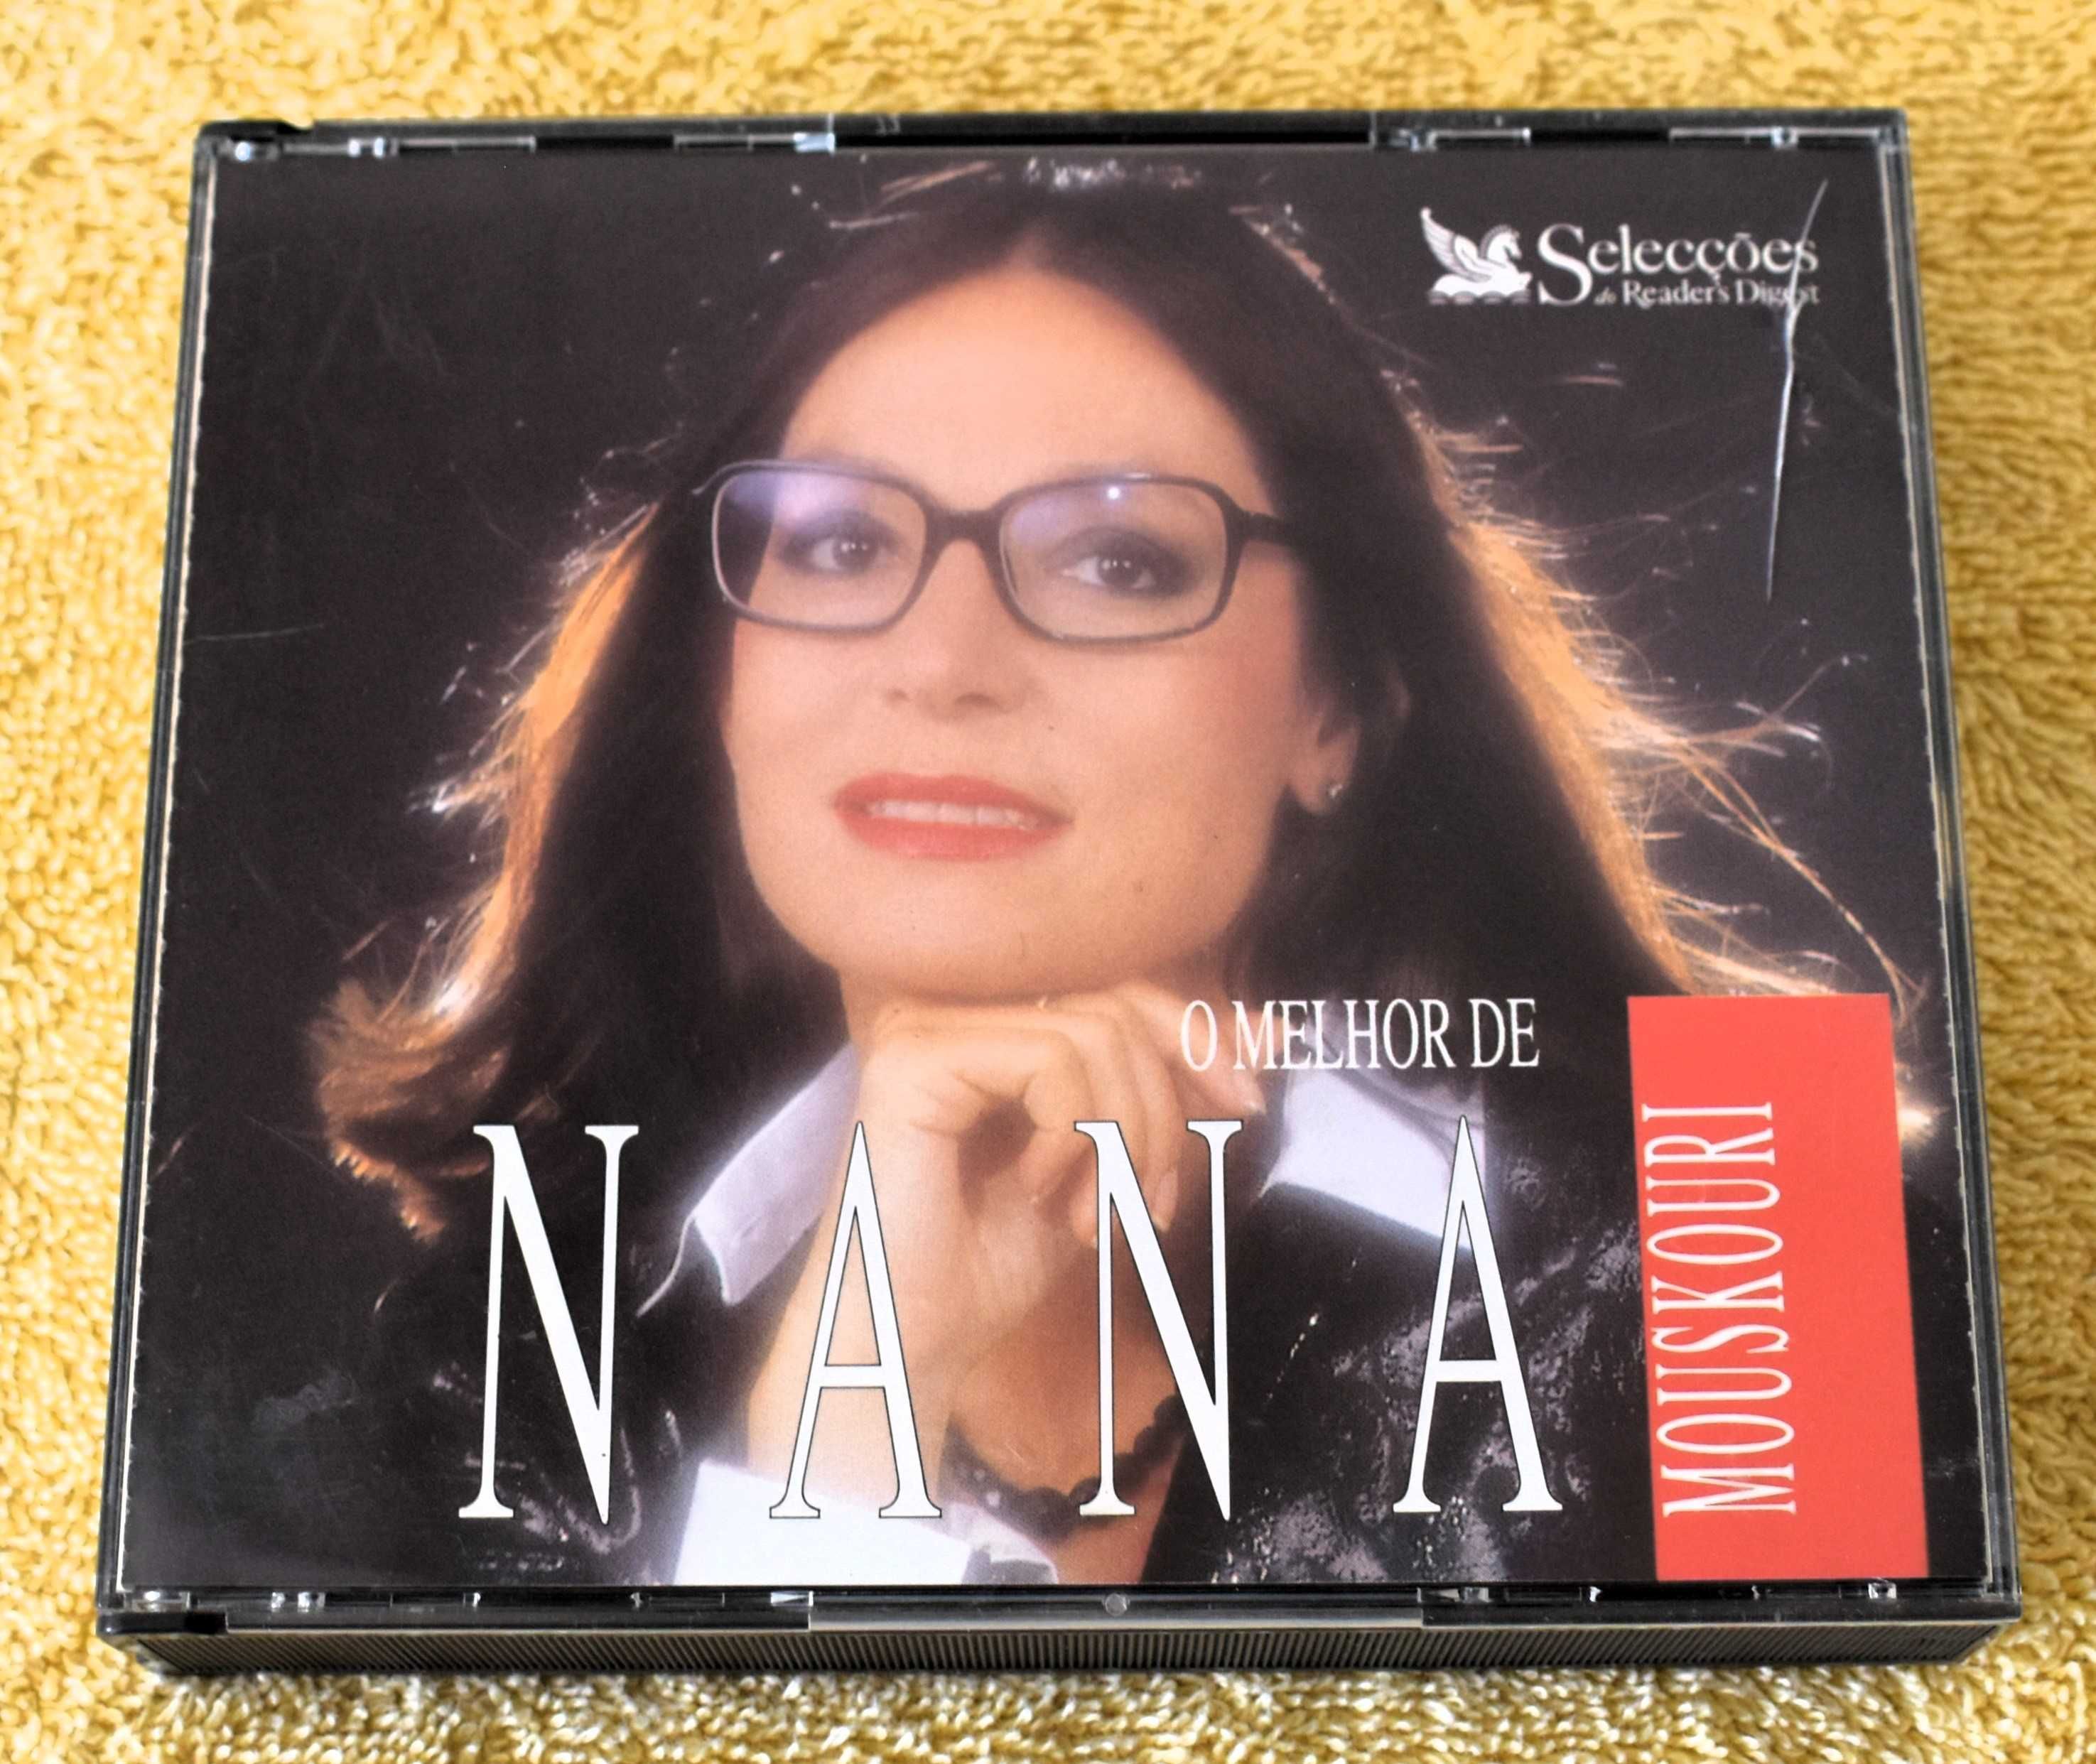 Nana Mouskouri - O Melhor de Nana Mouskouri - 2 discos